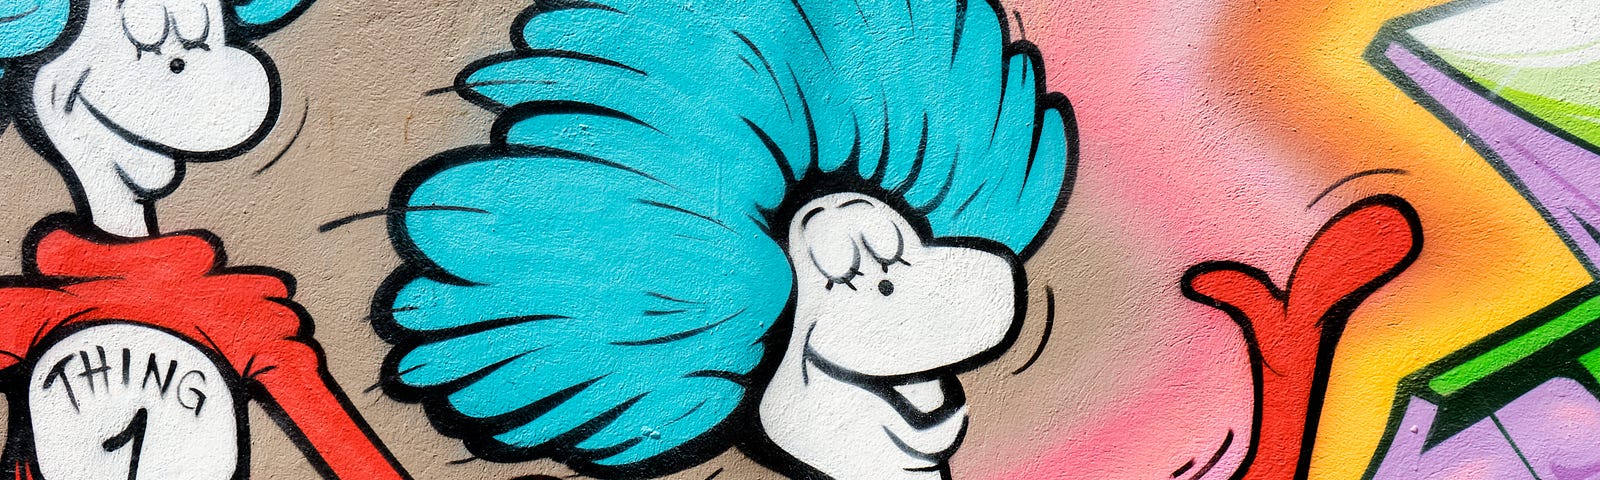 Dr. Seuss graffiti on a wall